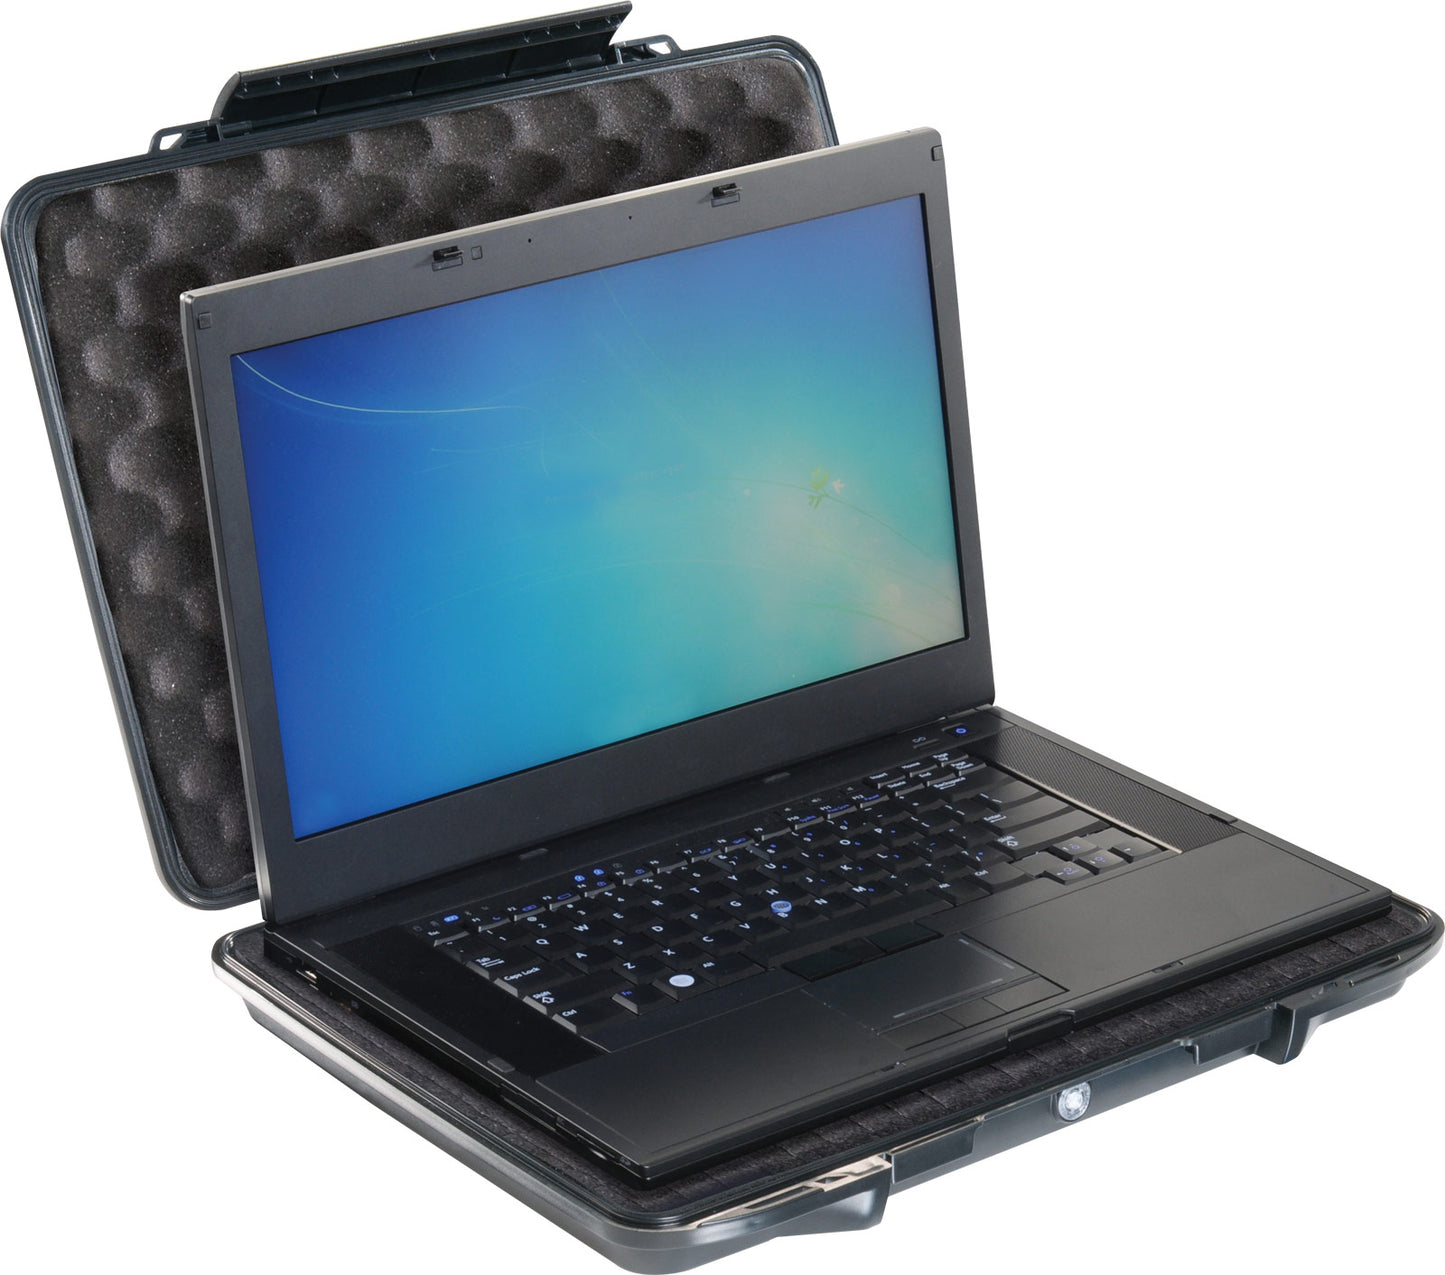 1095CC HardBack Laptop Case